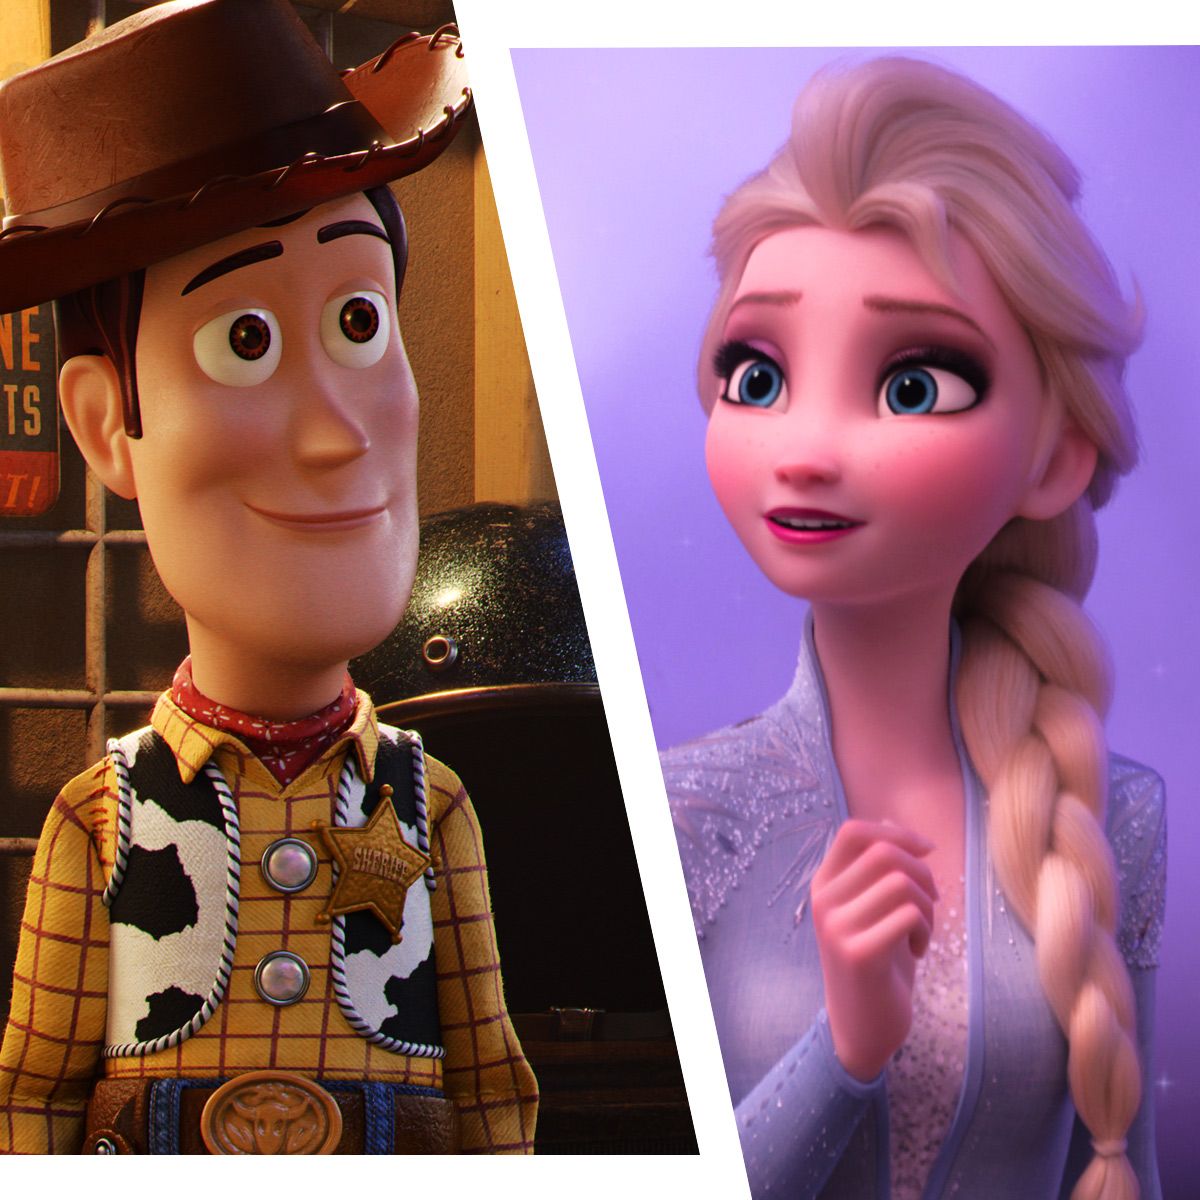 Frozen 3 nos planos da Disney, além de Toy Story e Zootopia